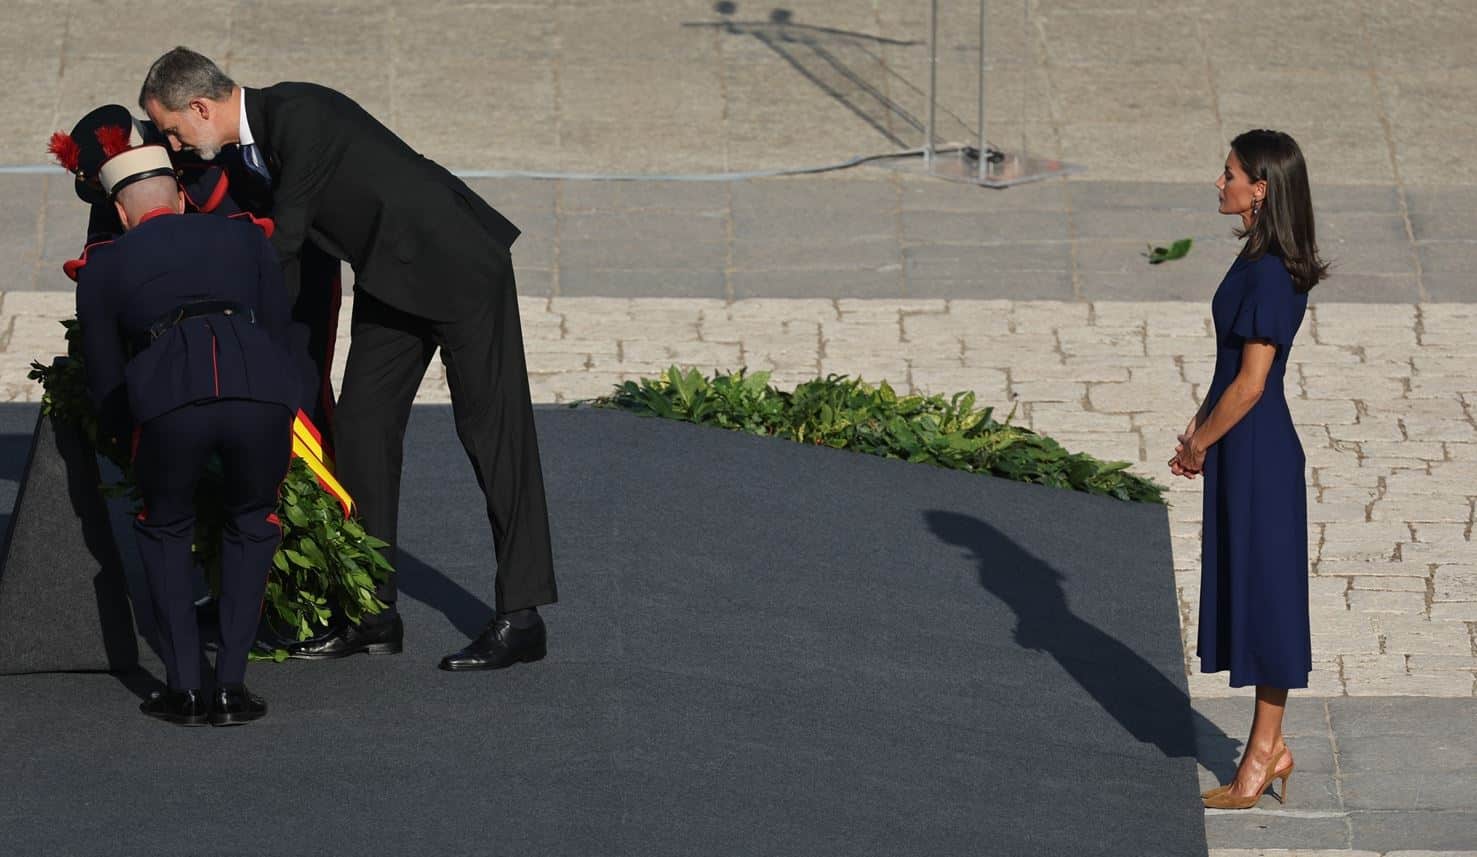 La reina Letizia llevando unos altísimos tacones que le han provocado metatarsalgia crónica.